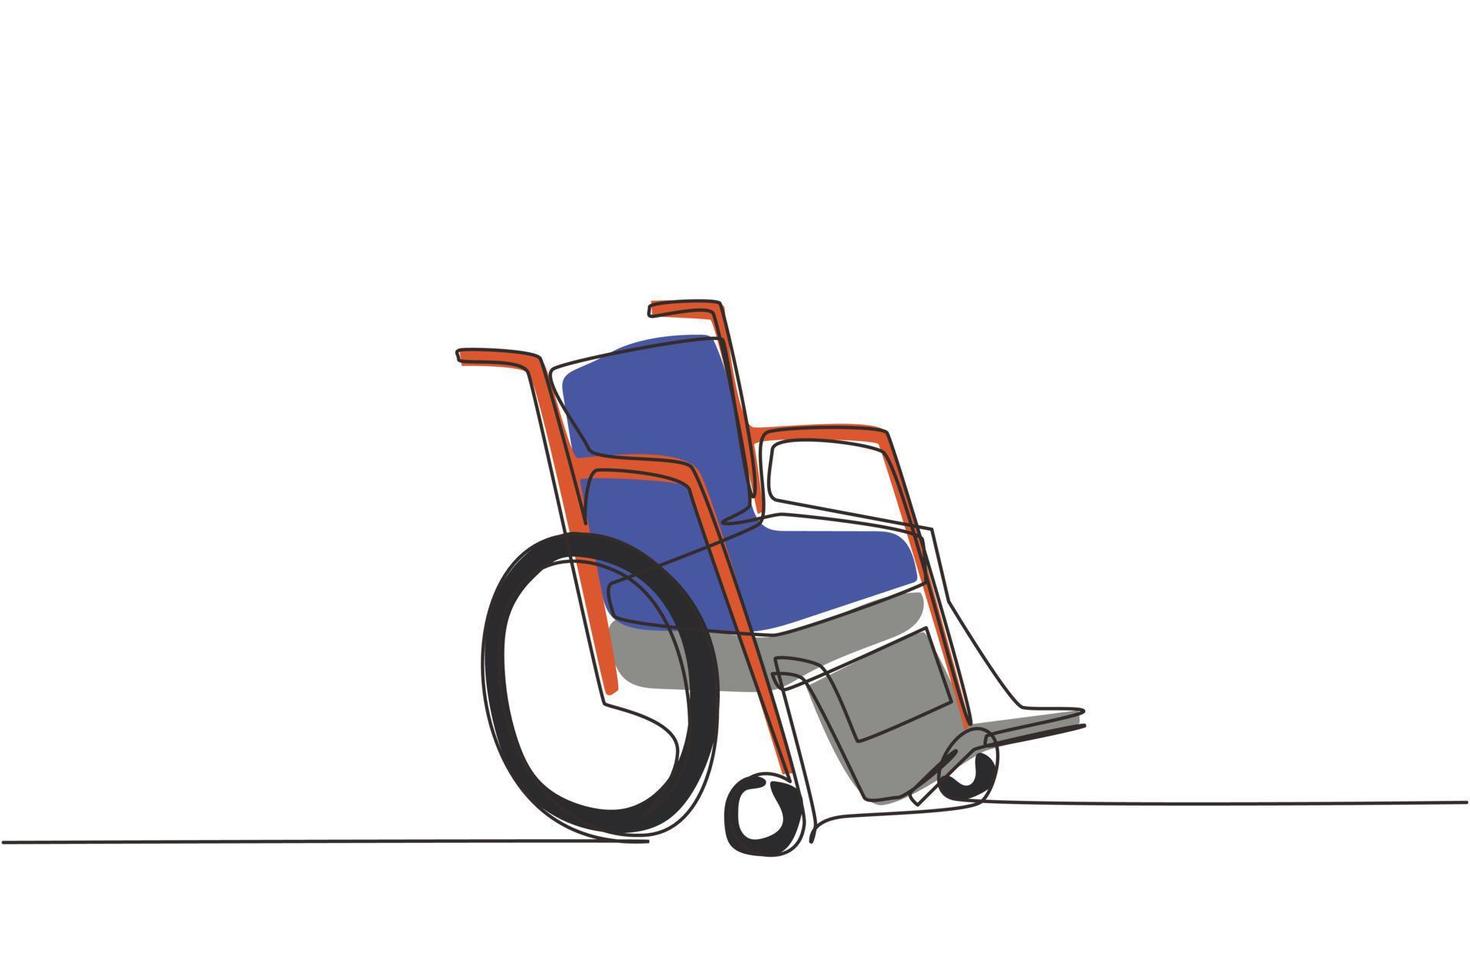 Sedia a rotelle con disegno a linea continua per persone con disabilità. dispositivo di trasporto carrozzina vuoto. oggetto di terapia sanitaria disegnato a mano. illustrazione grafica vettoriale di disegno a linea singola